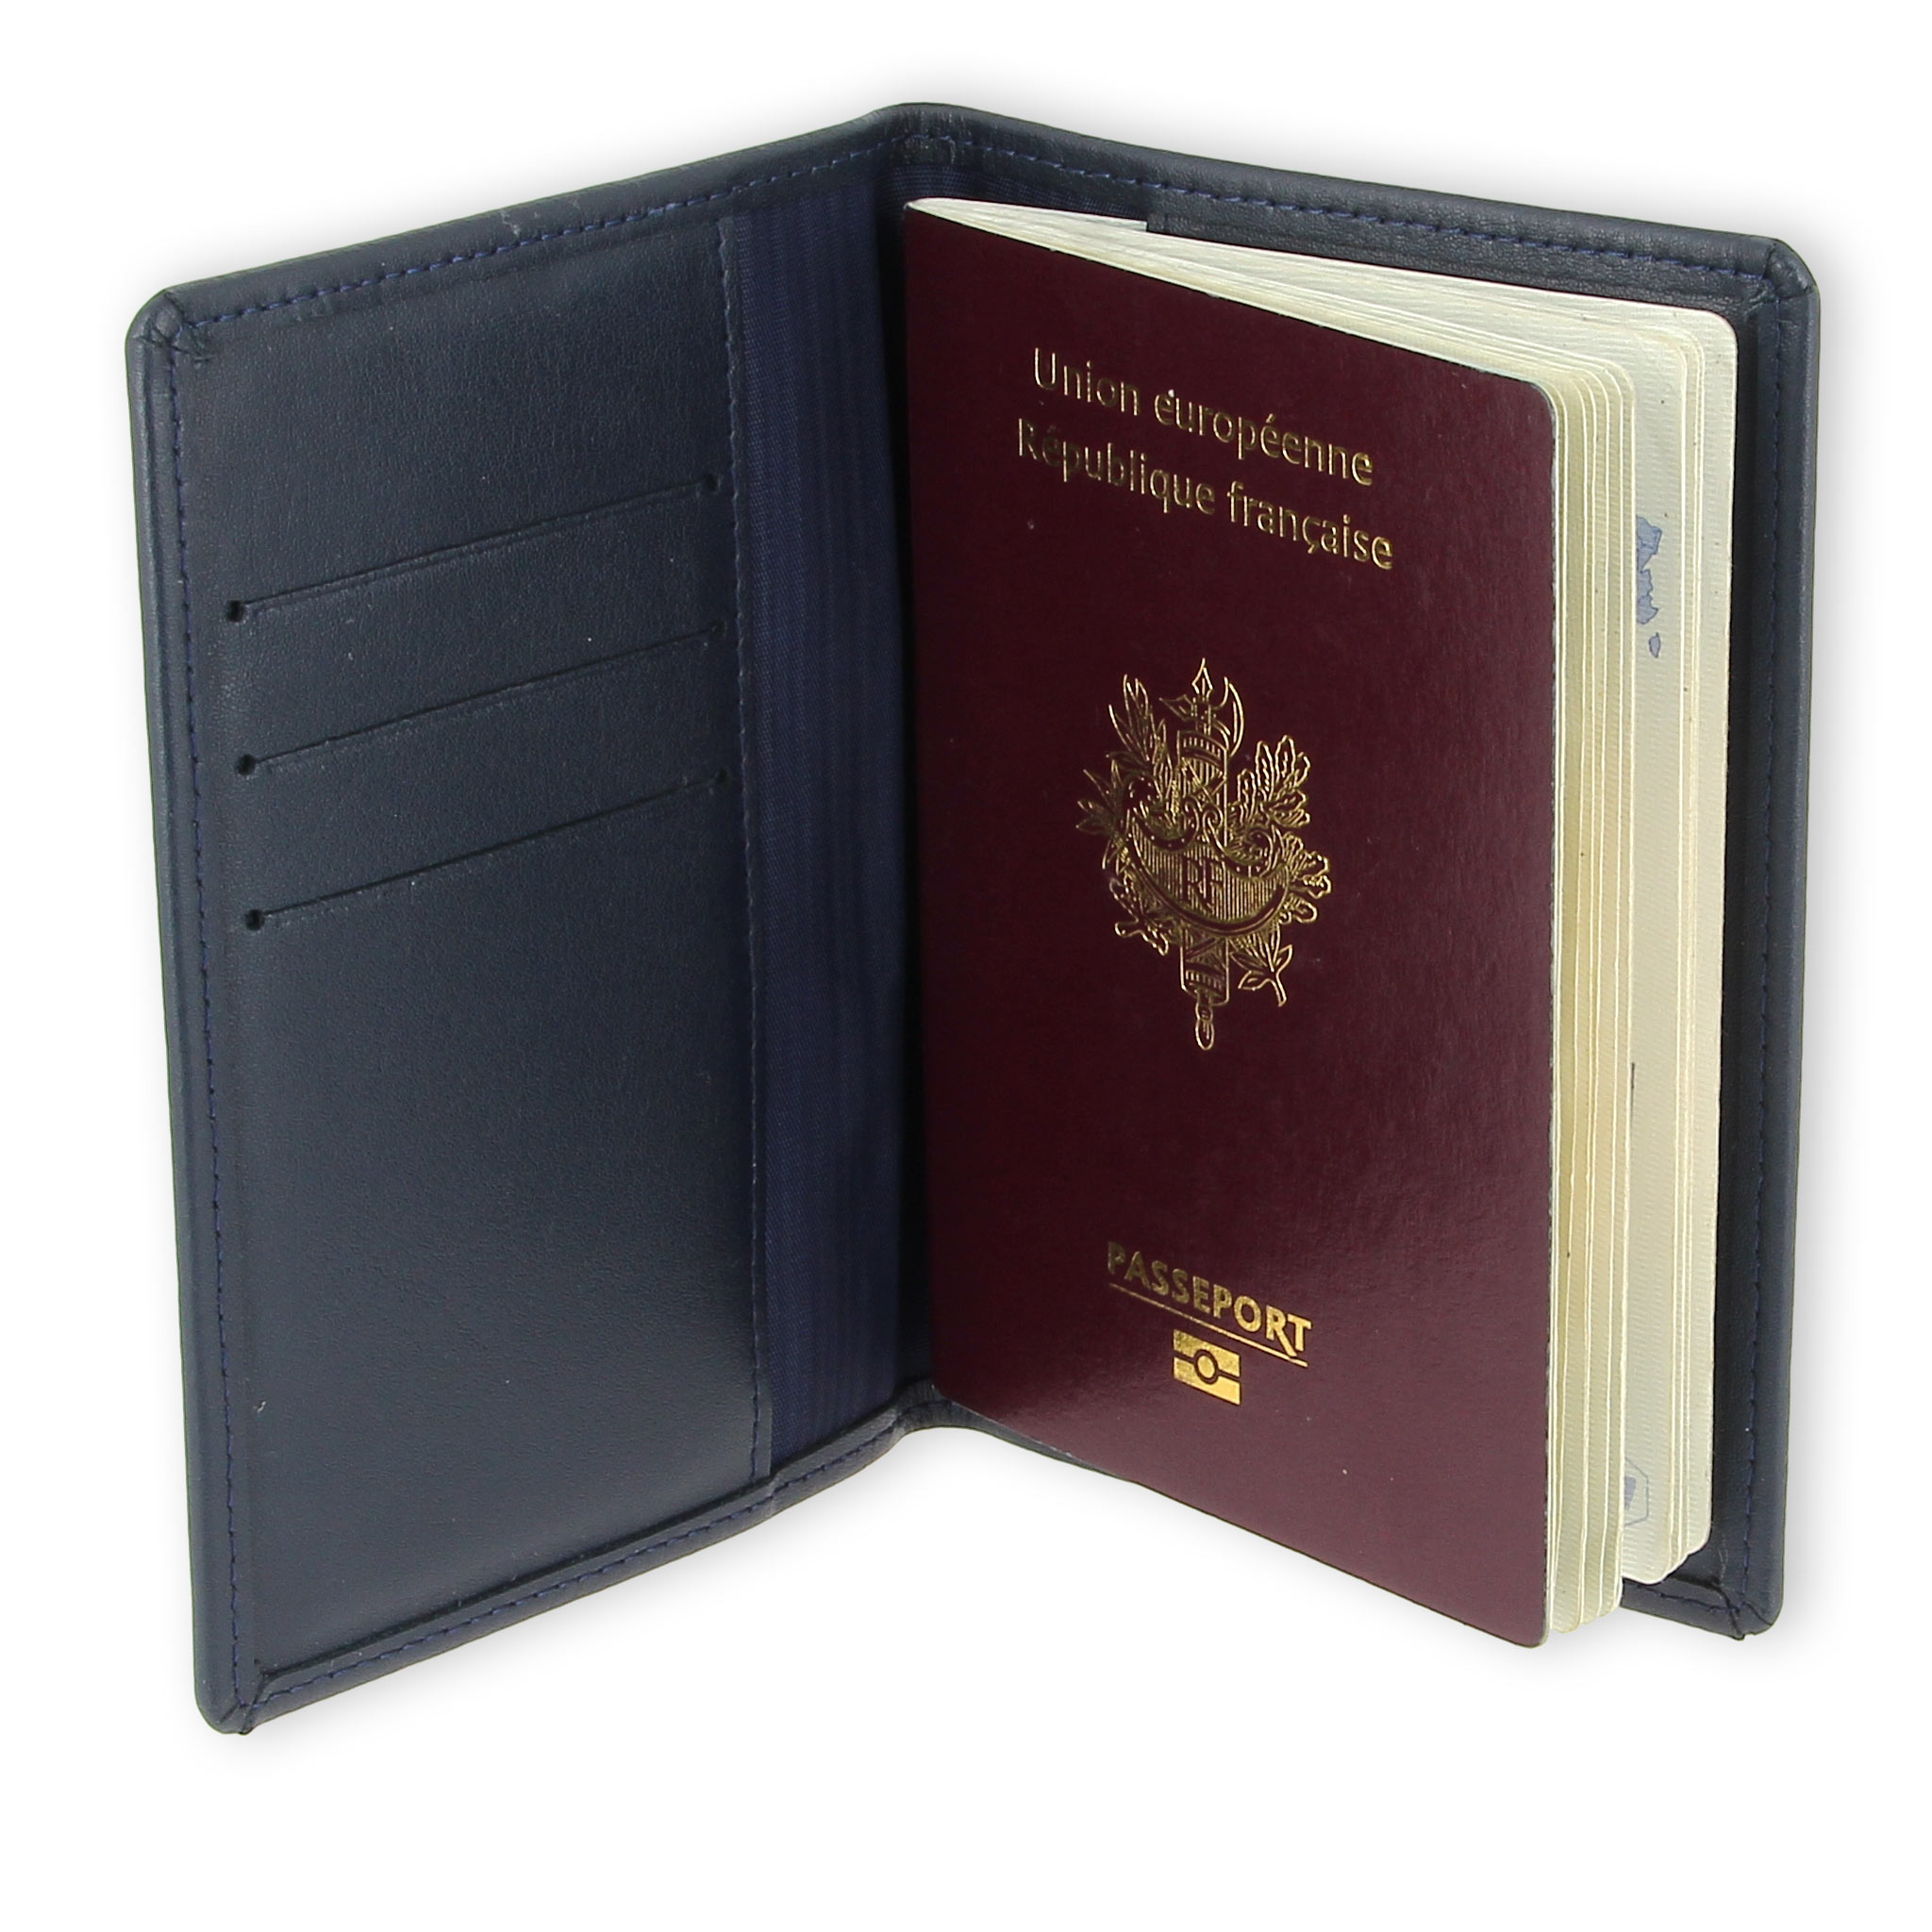 Porte passeport et organiseur de voyage par Nomalite sécurisé anti-vol RFID qui protège passeports et porte cartes Etui homme/femme / enfant en cuir synthétique premium noir tickets billets 